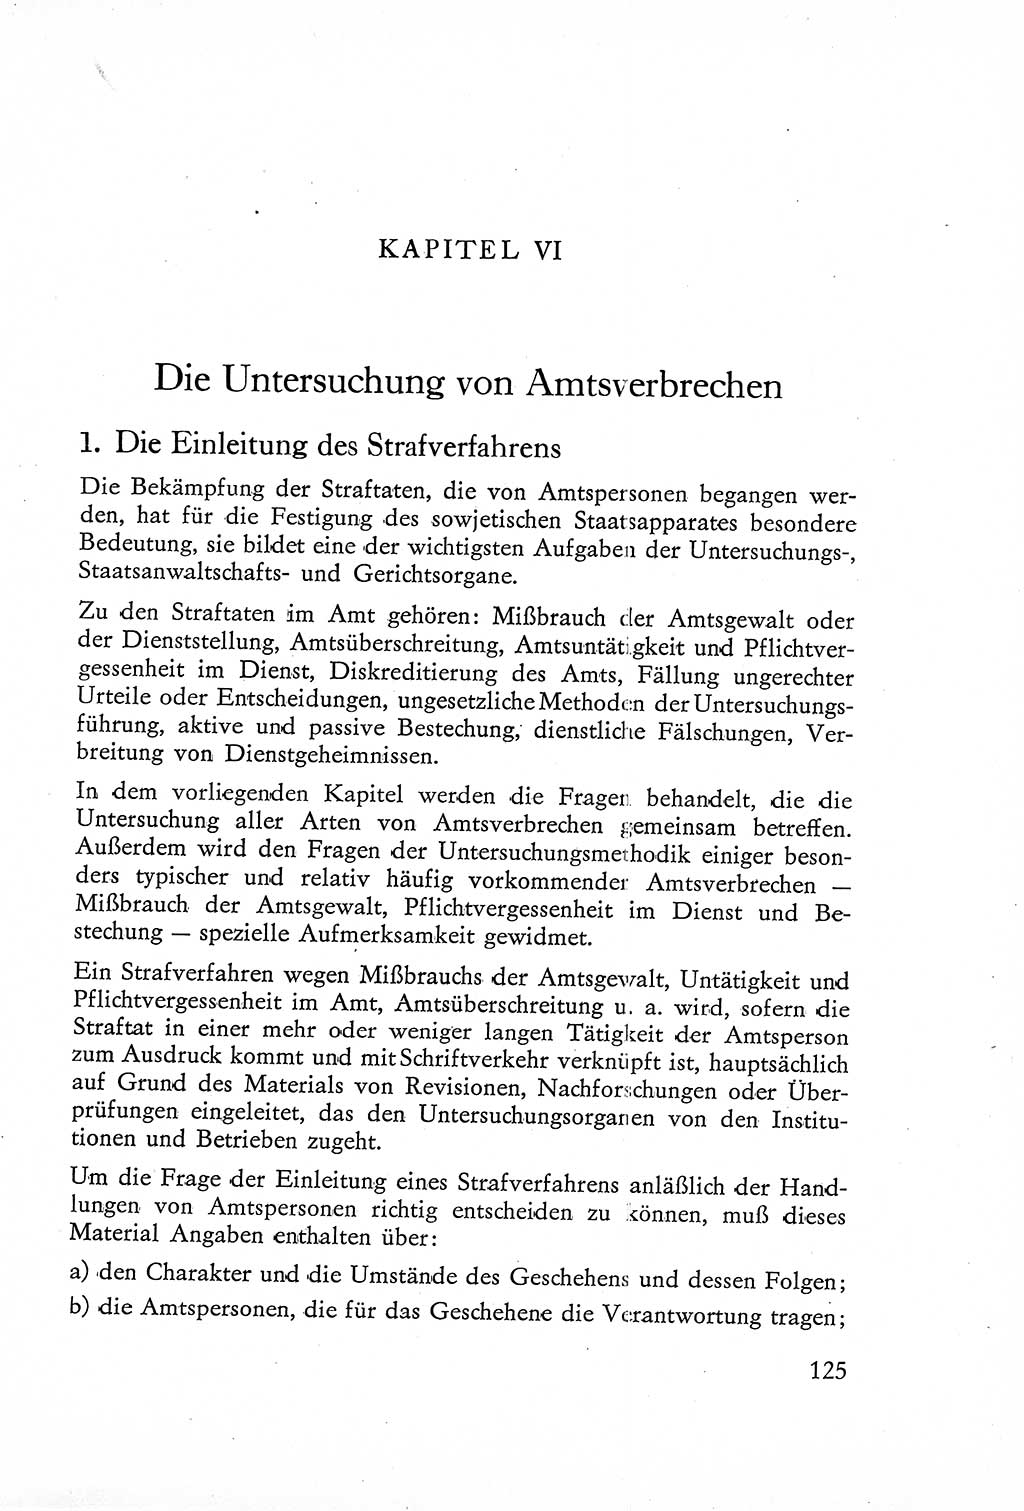 Die Untersuchung einzelner Verbrechensarten [Deutsche Demokratische Republik (DDR)] 1960, Seite 125 (Unters. Verbr.-Art. DDR 1960, S. 125)